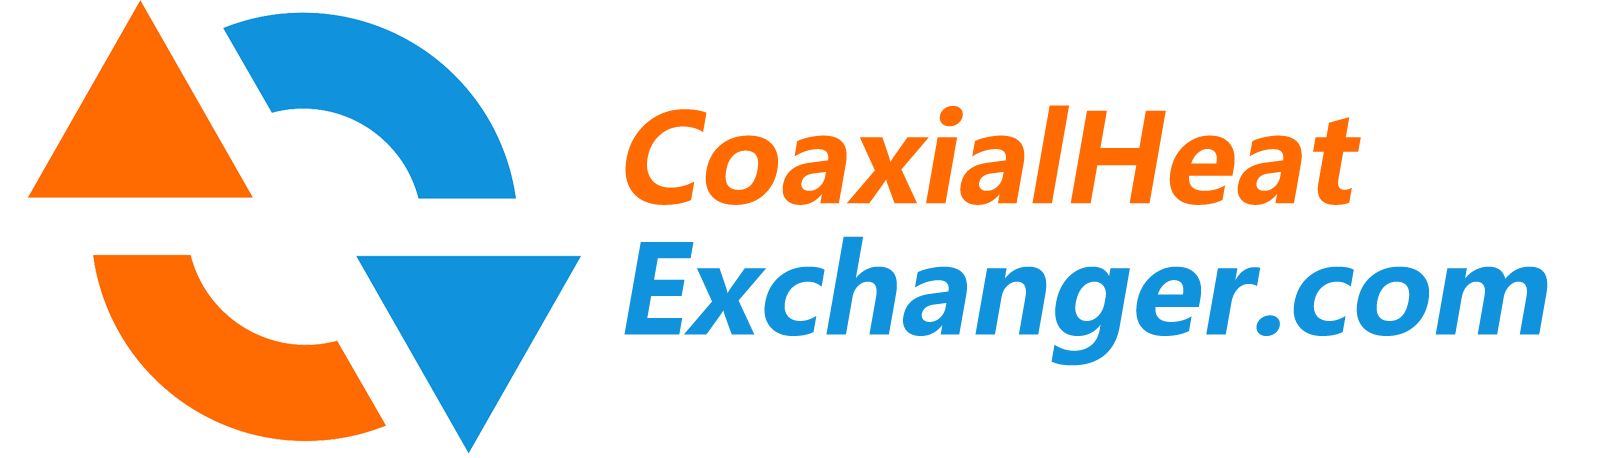 ConxialHeatExchanger.com